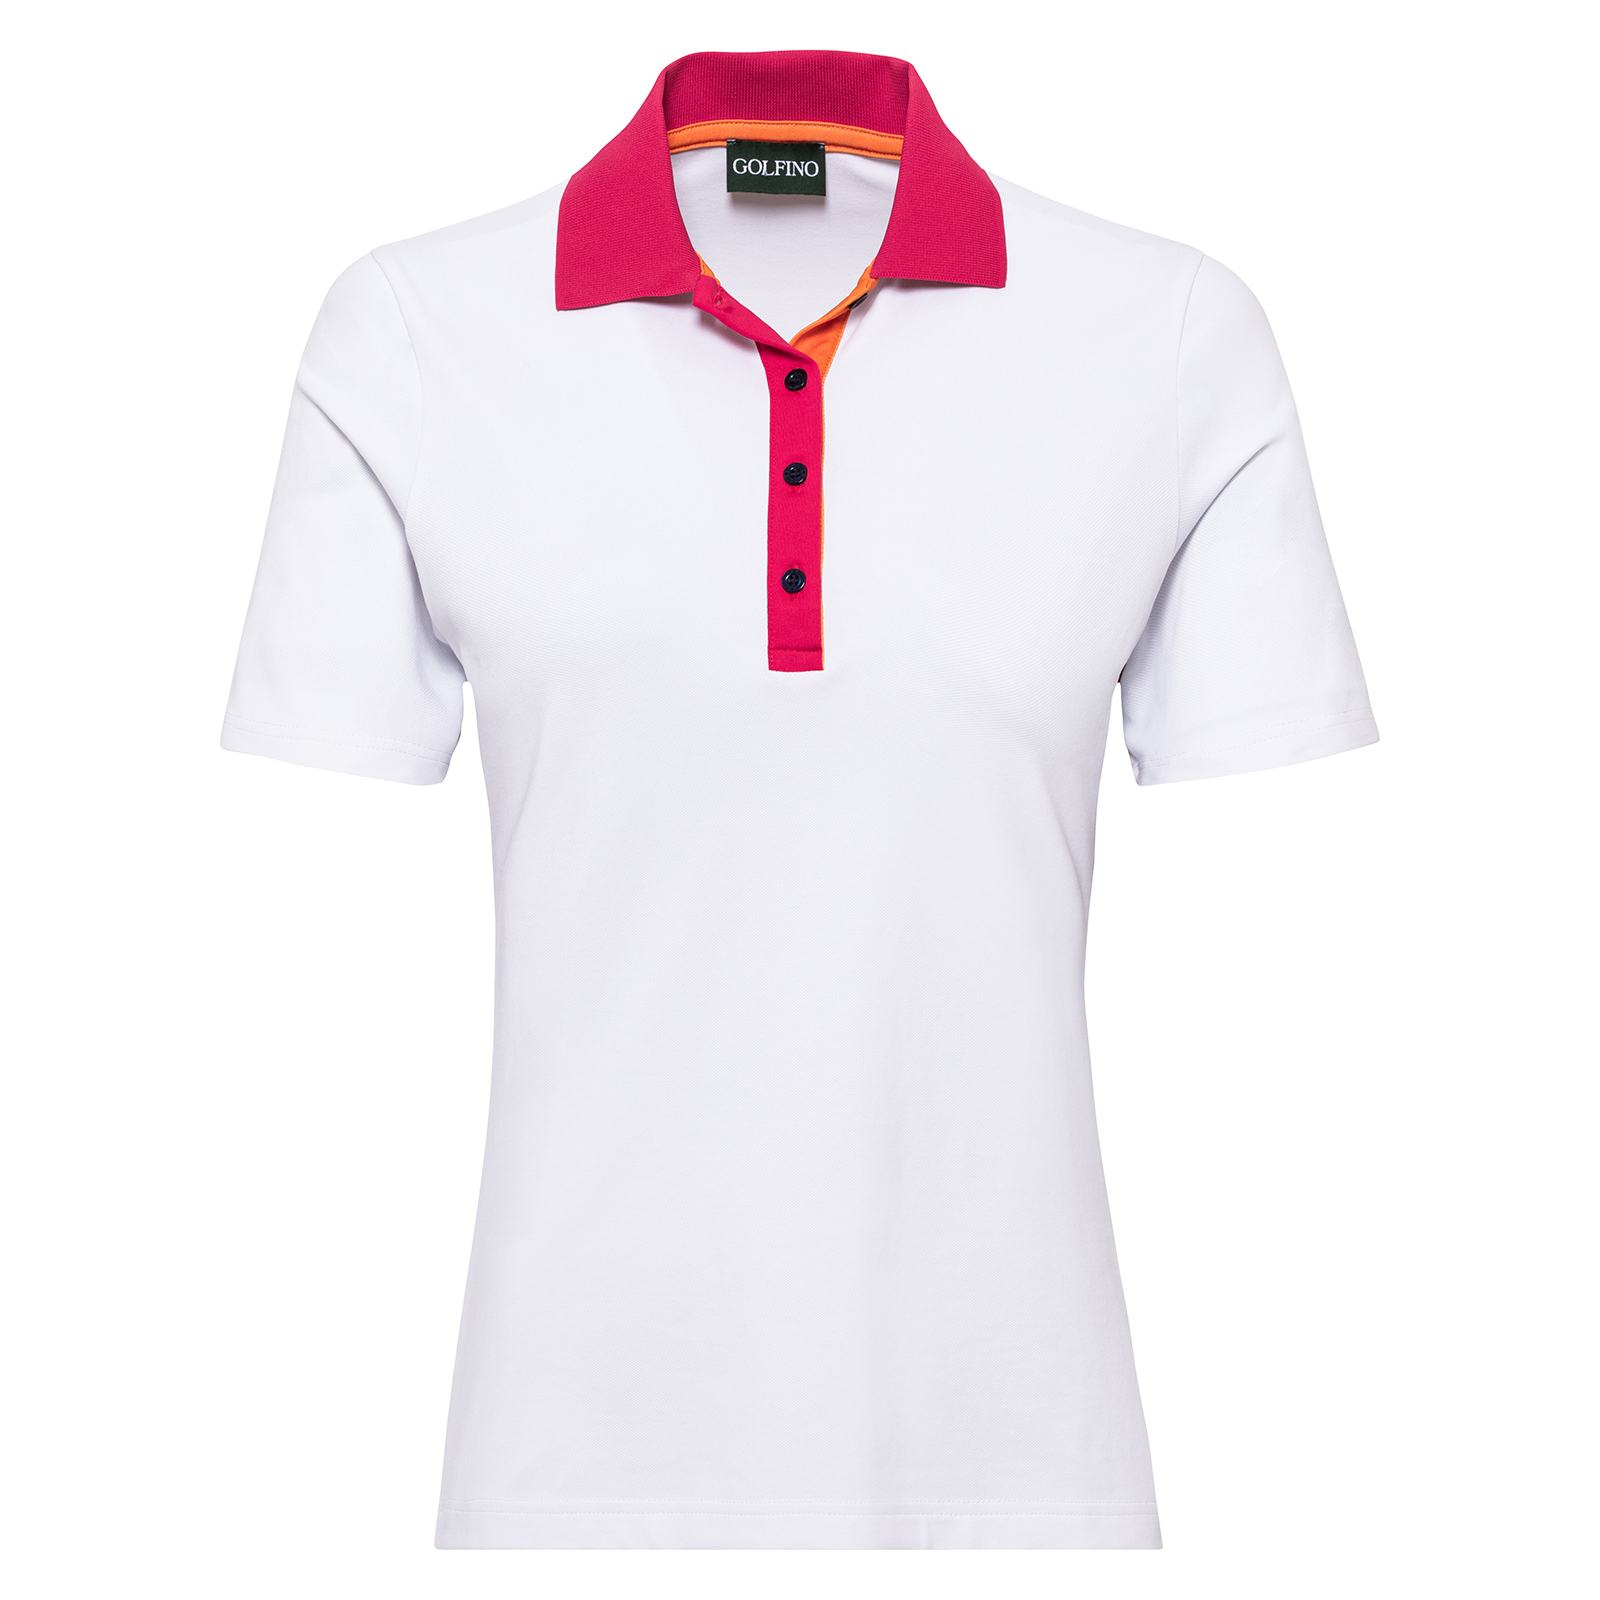 Damen Golf Poloshirt mit UV-Schutz